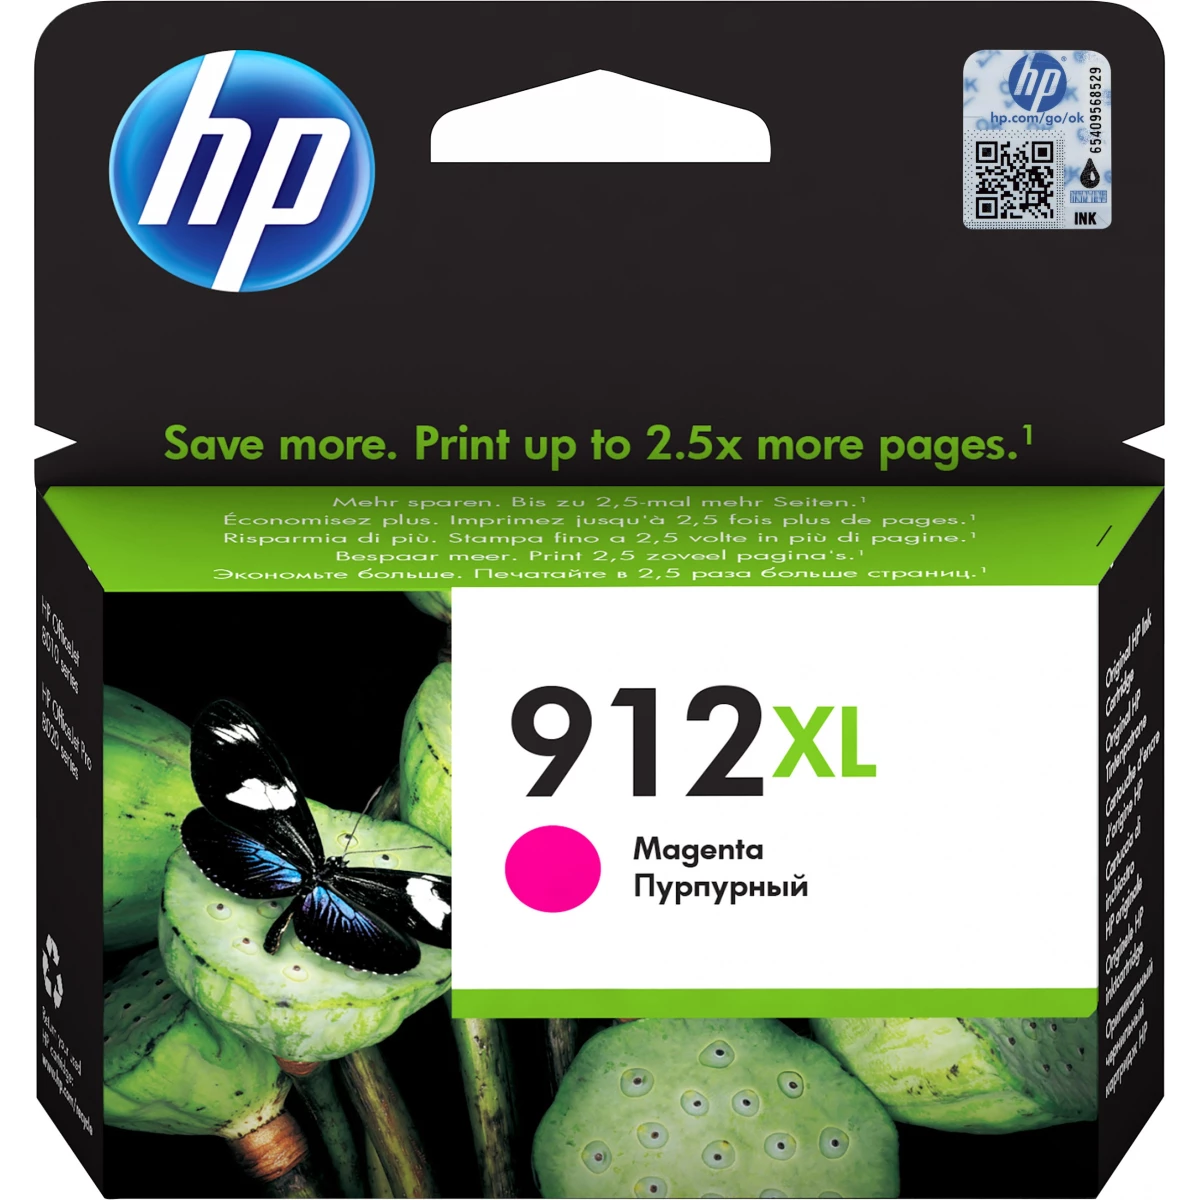 HP Druckerpatrone '912XL' magenta 10,4 ml